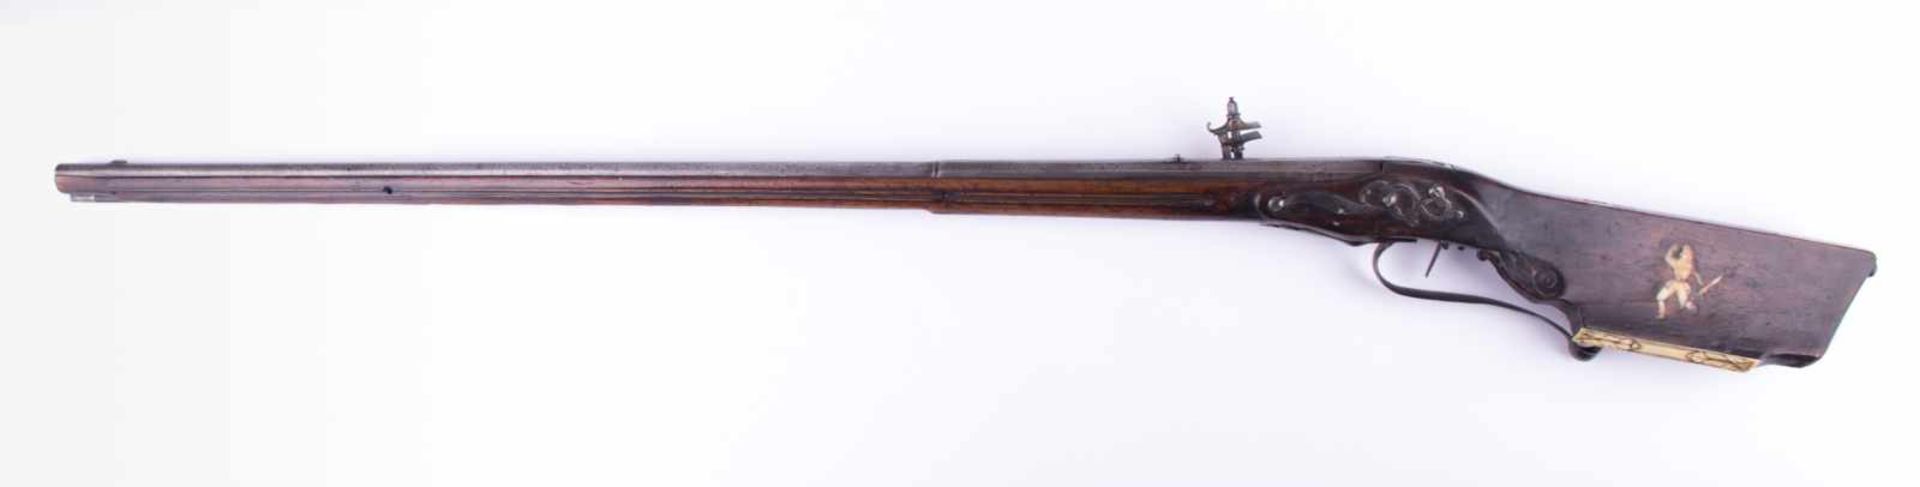 Radschloss-Gewehr Italien um 1600 Beschläge teils graviert, mit Beineinlagen verziert, L: ca. 117